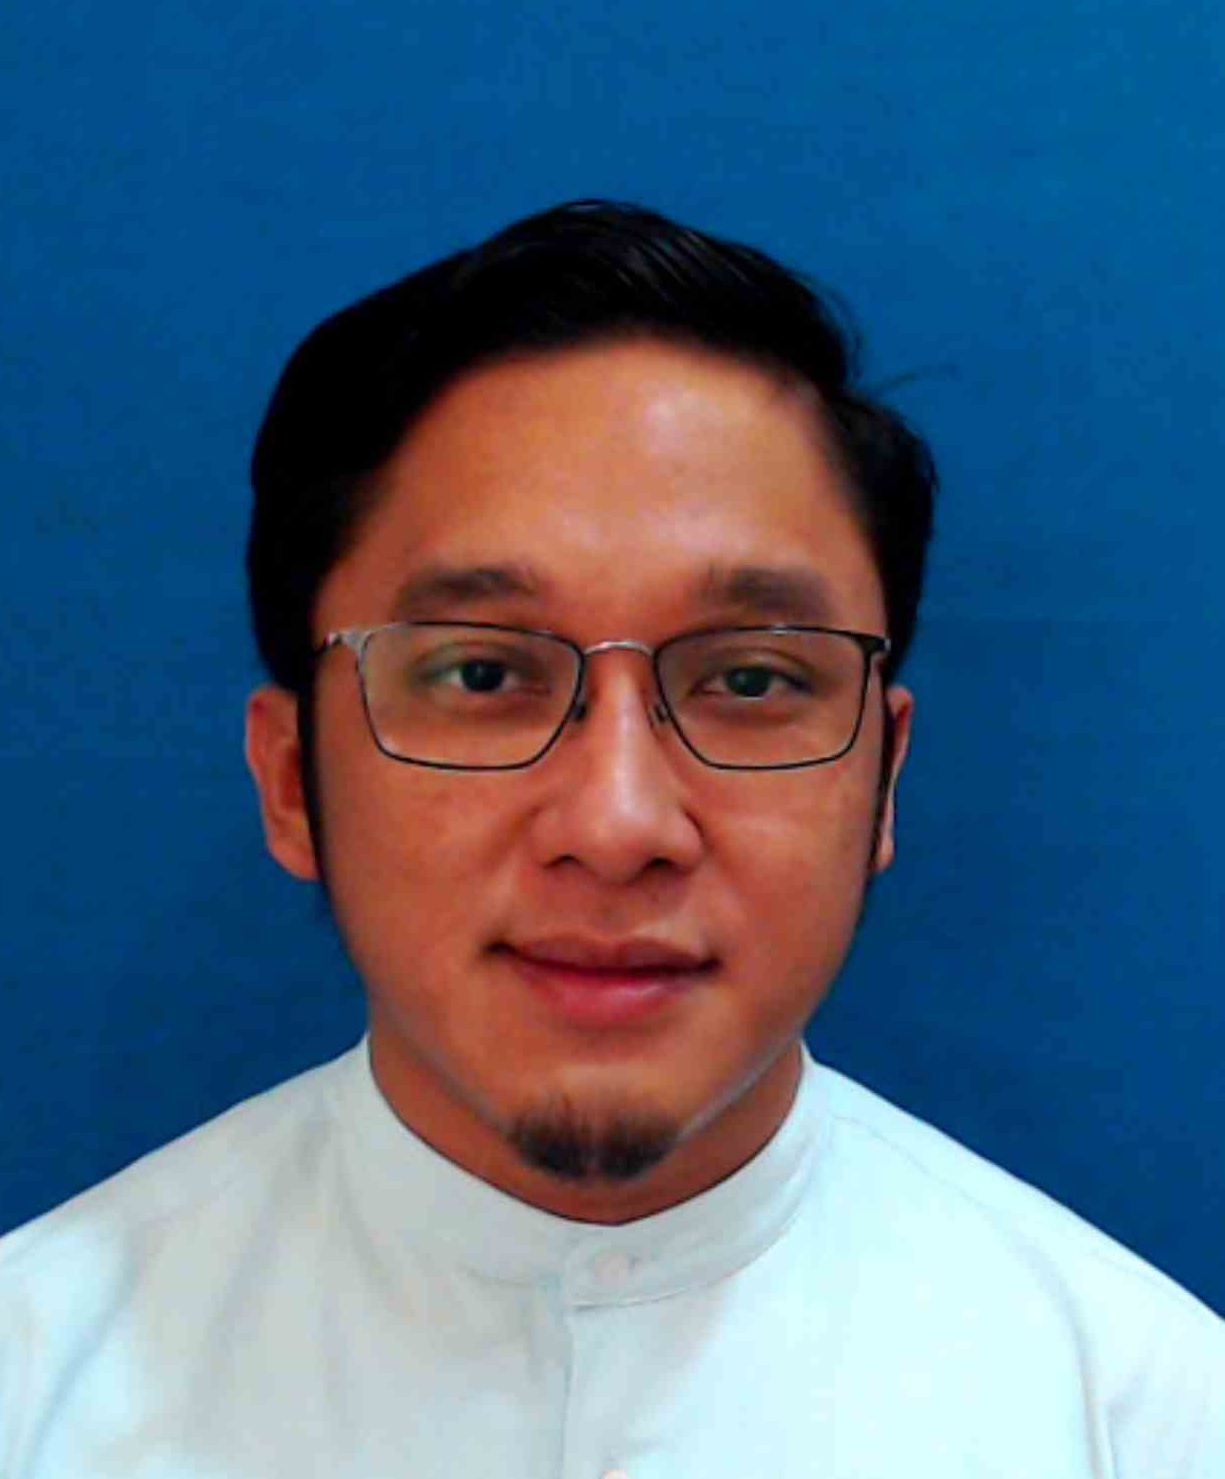 Muhammad Azamuddin Bin Mohd Talib